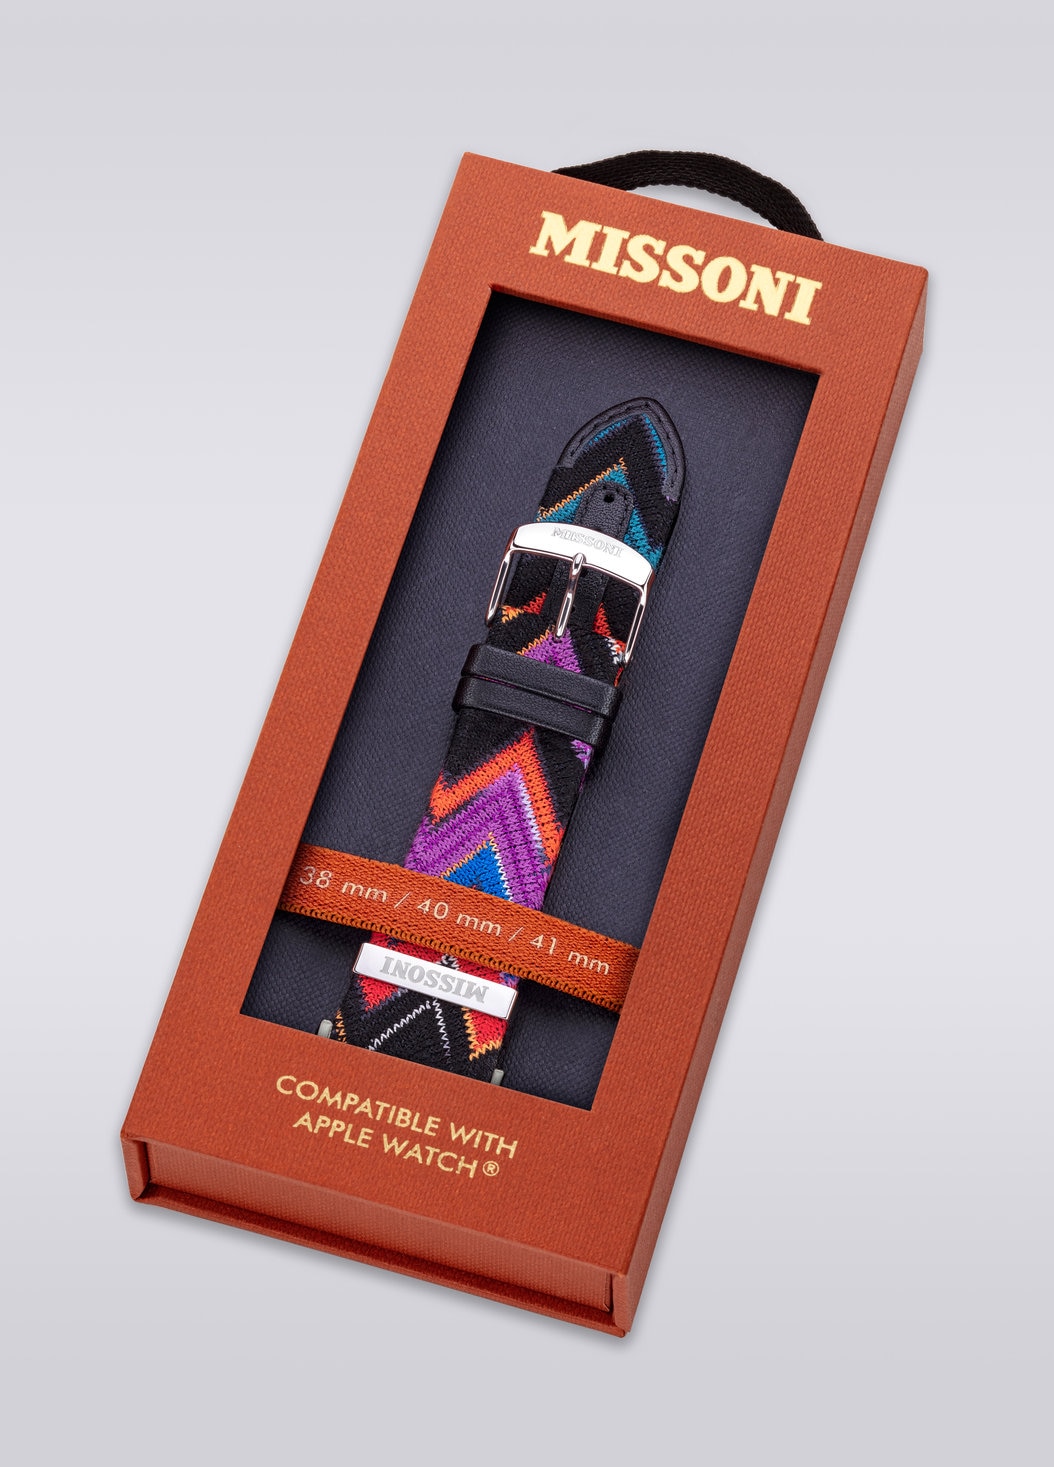 Missoni Fabric 22 mm mit Apple Watch kompatibles Armband, Mehrfarbig  - 8053147046266 - 5